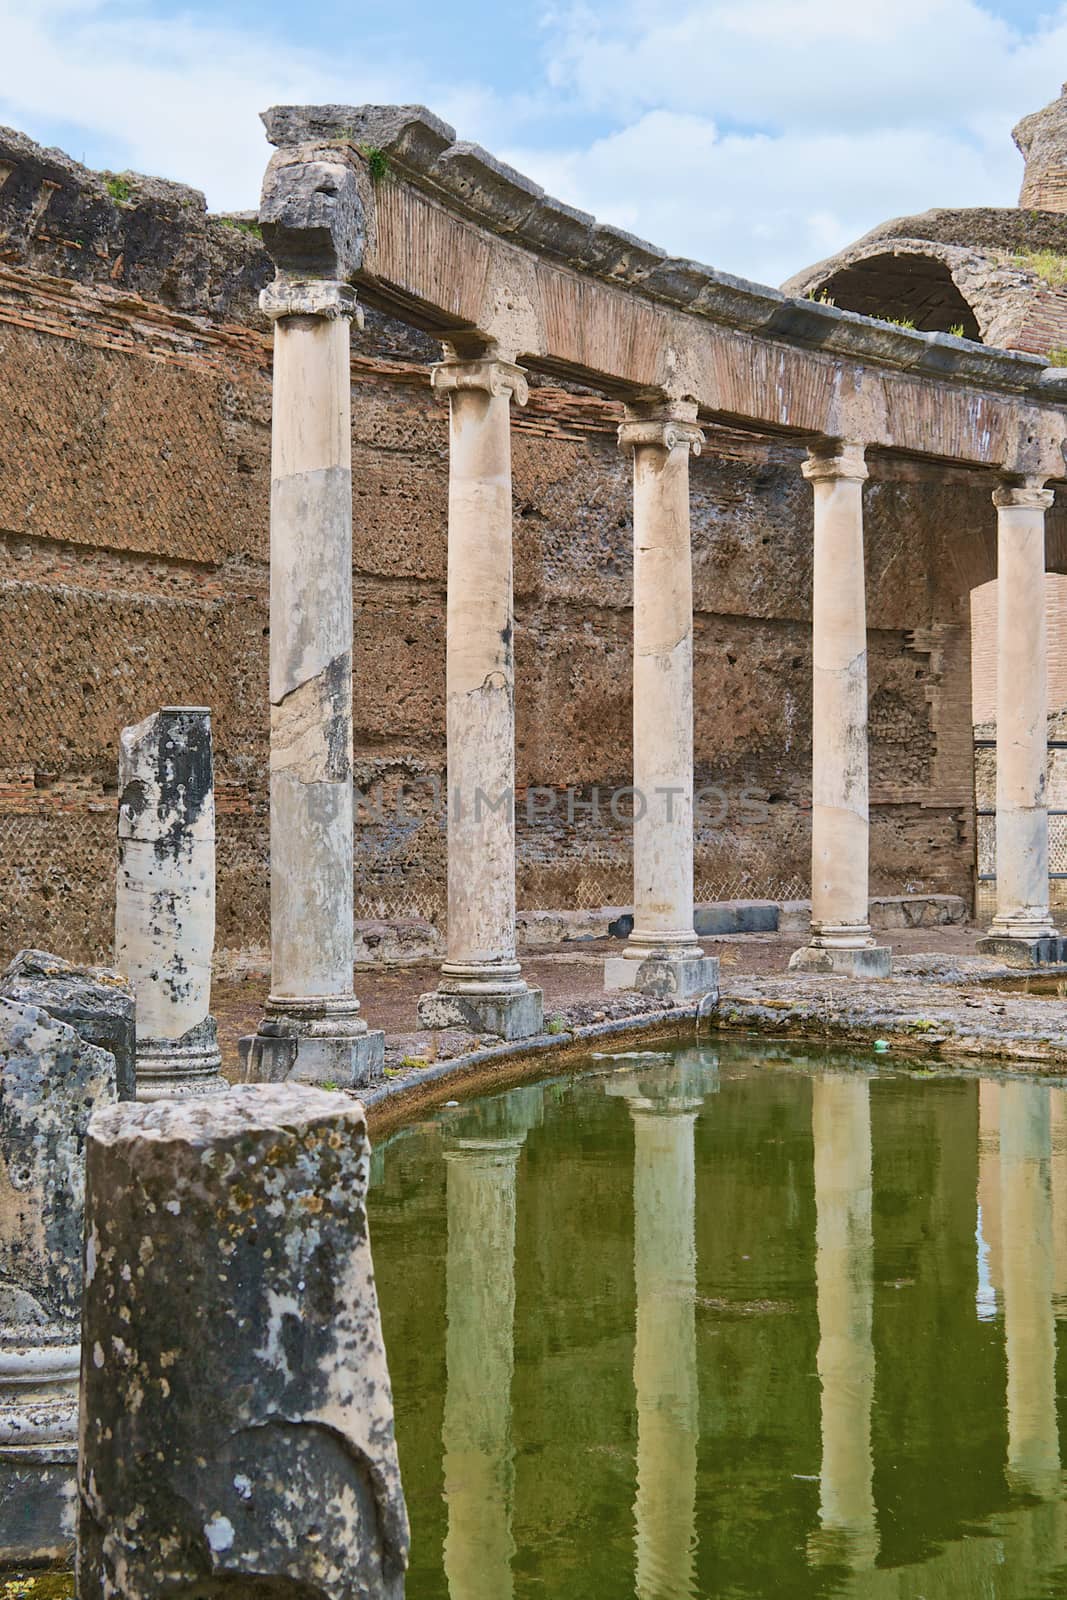 View of Villa di Adriano ruins in Tivoli, Italy